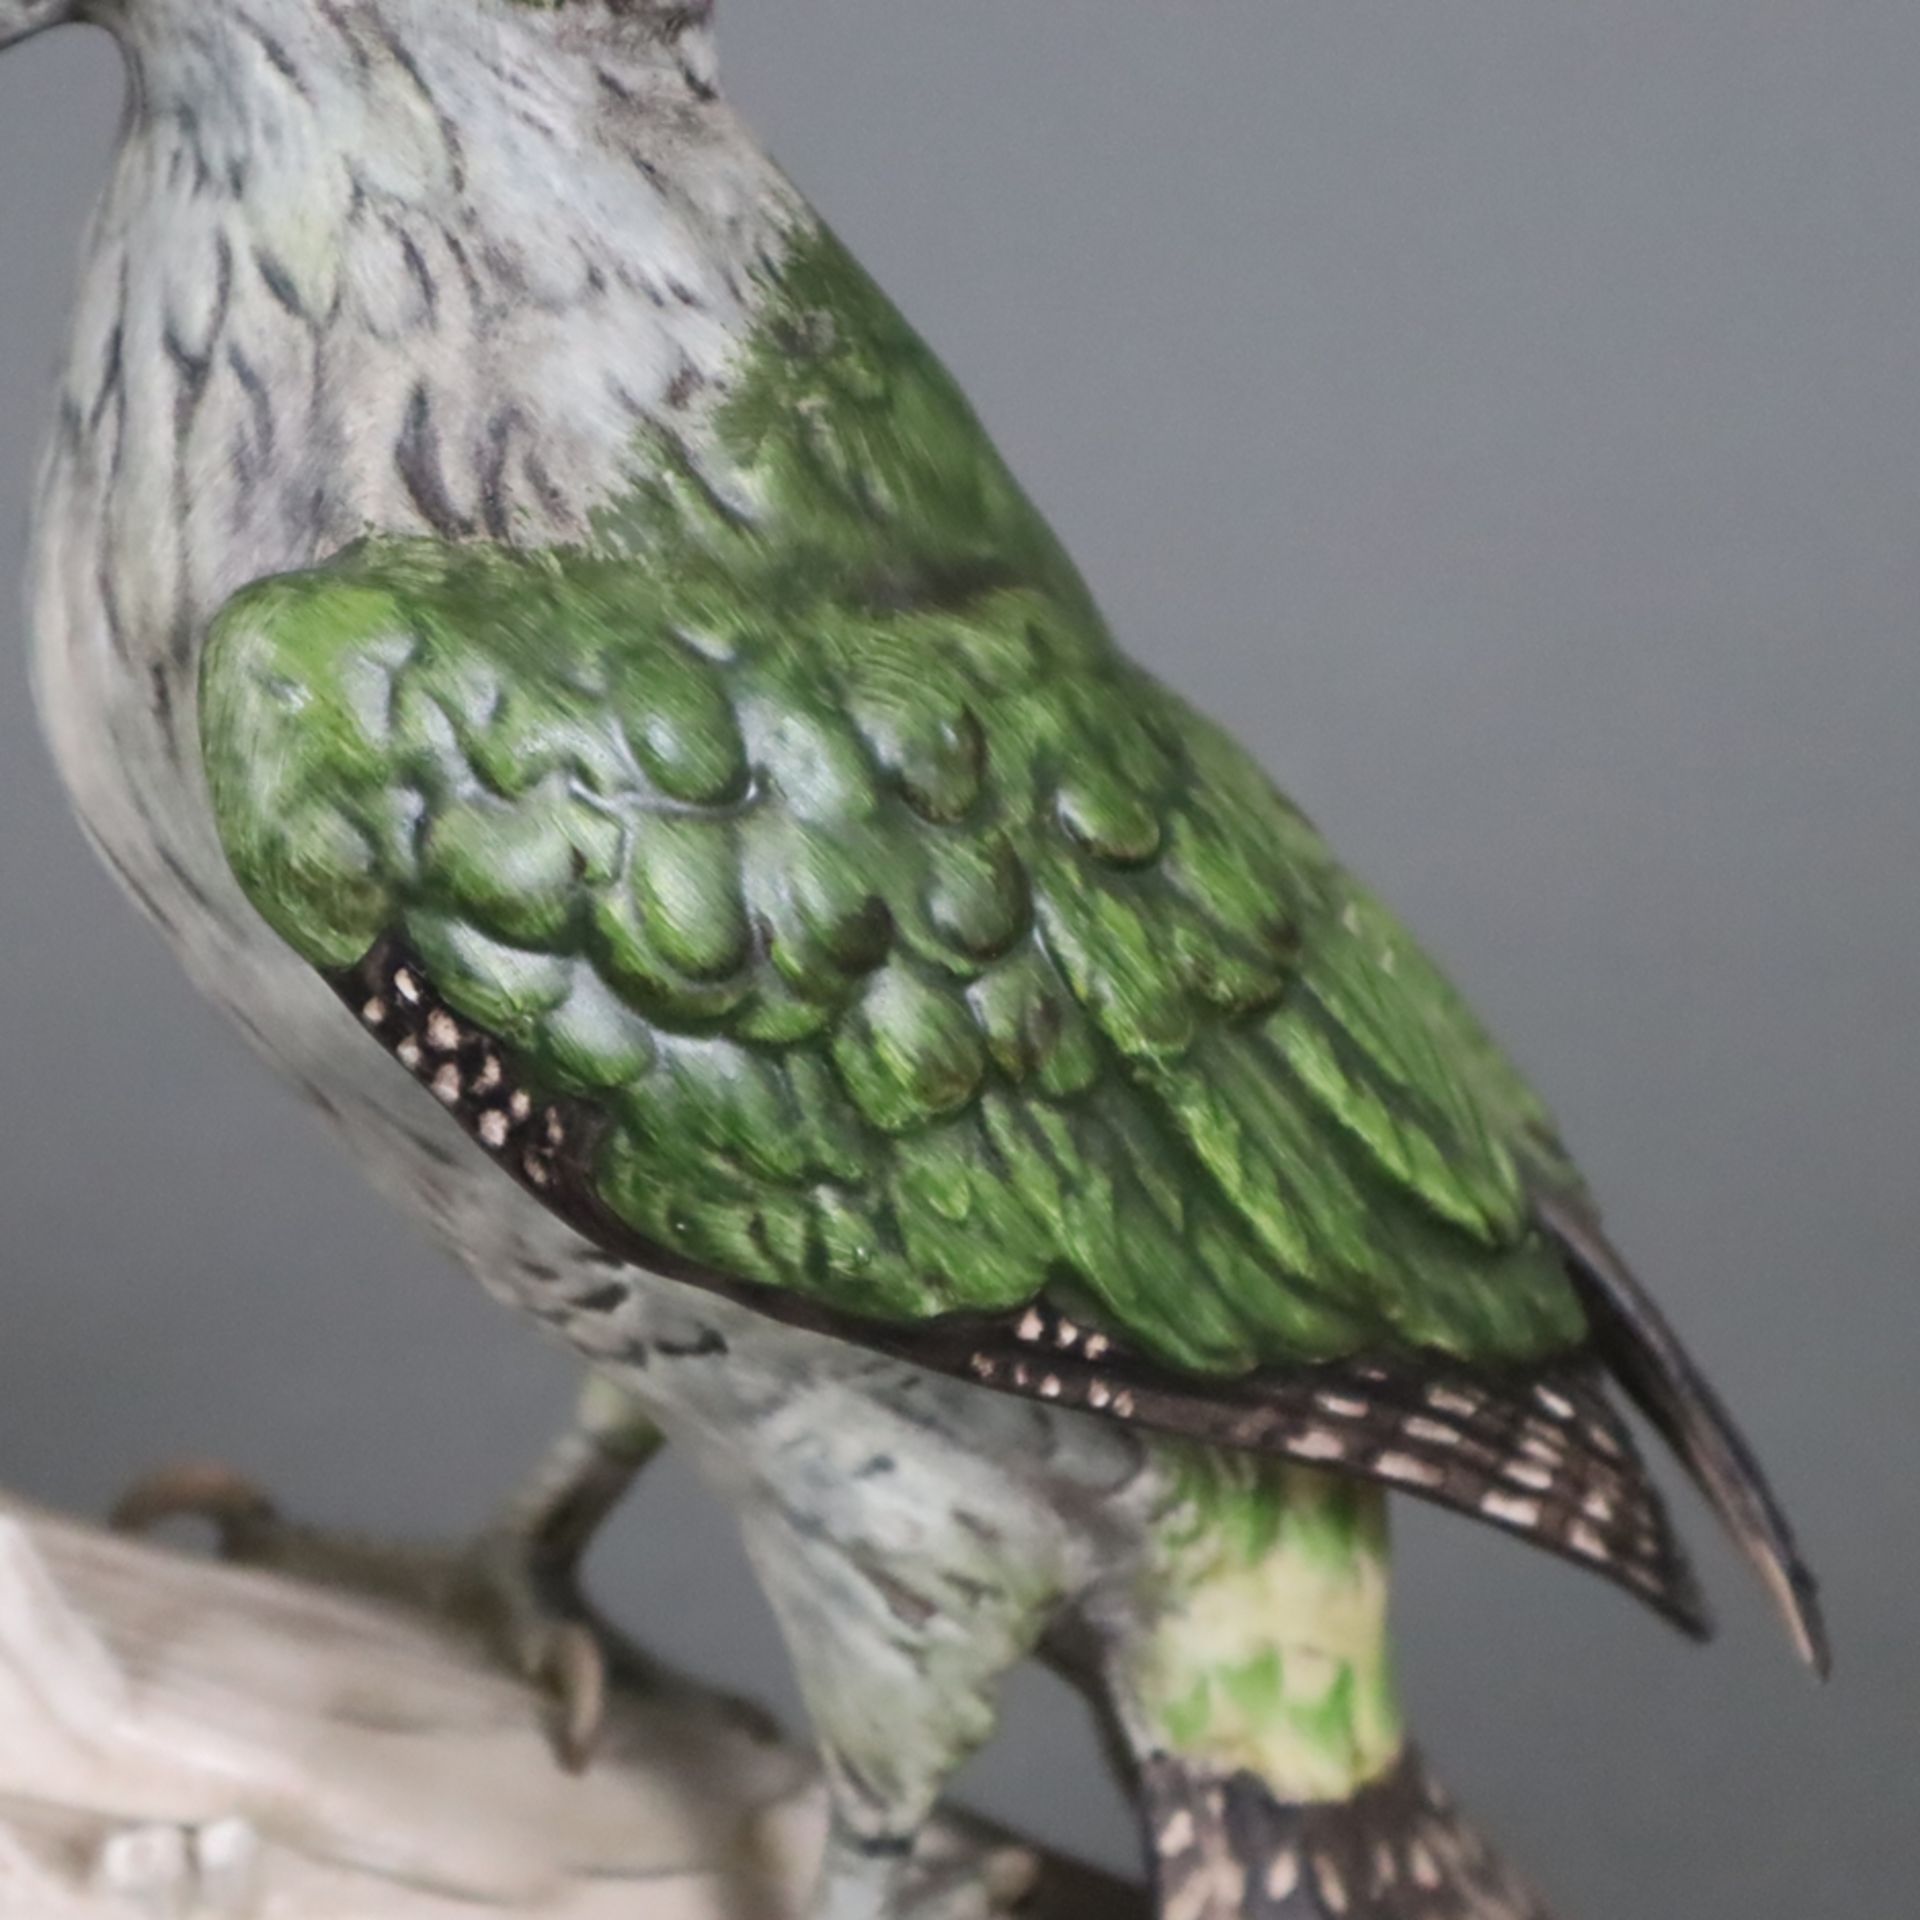 Vogelfigur "Grünspecht" - Goebel, Entwurf von G. Bochmann (1975), Biskuitporzellan, polychrom bemal - Bild 3 aus 9